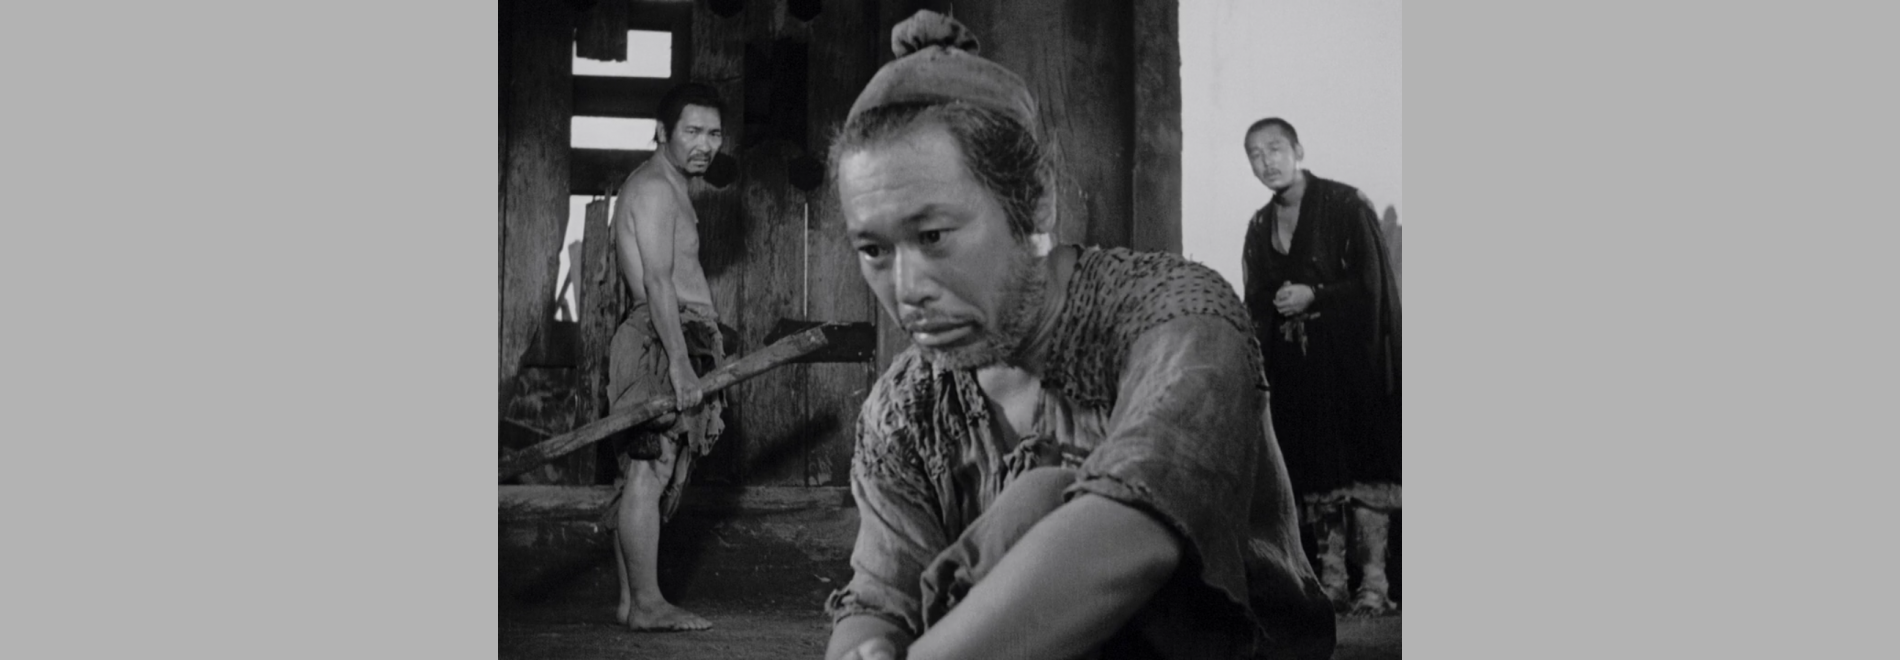 Rashomon (Akira Kurosawa, 1950)